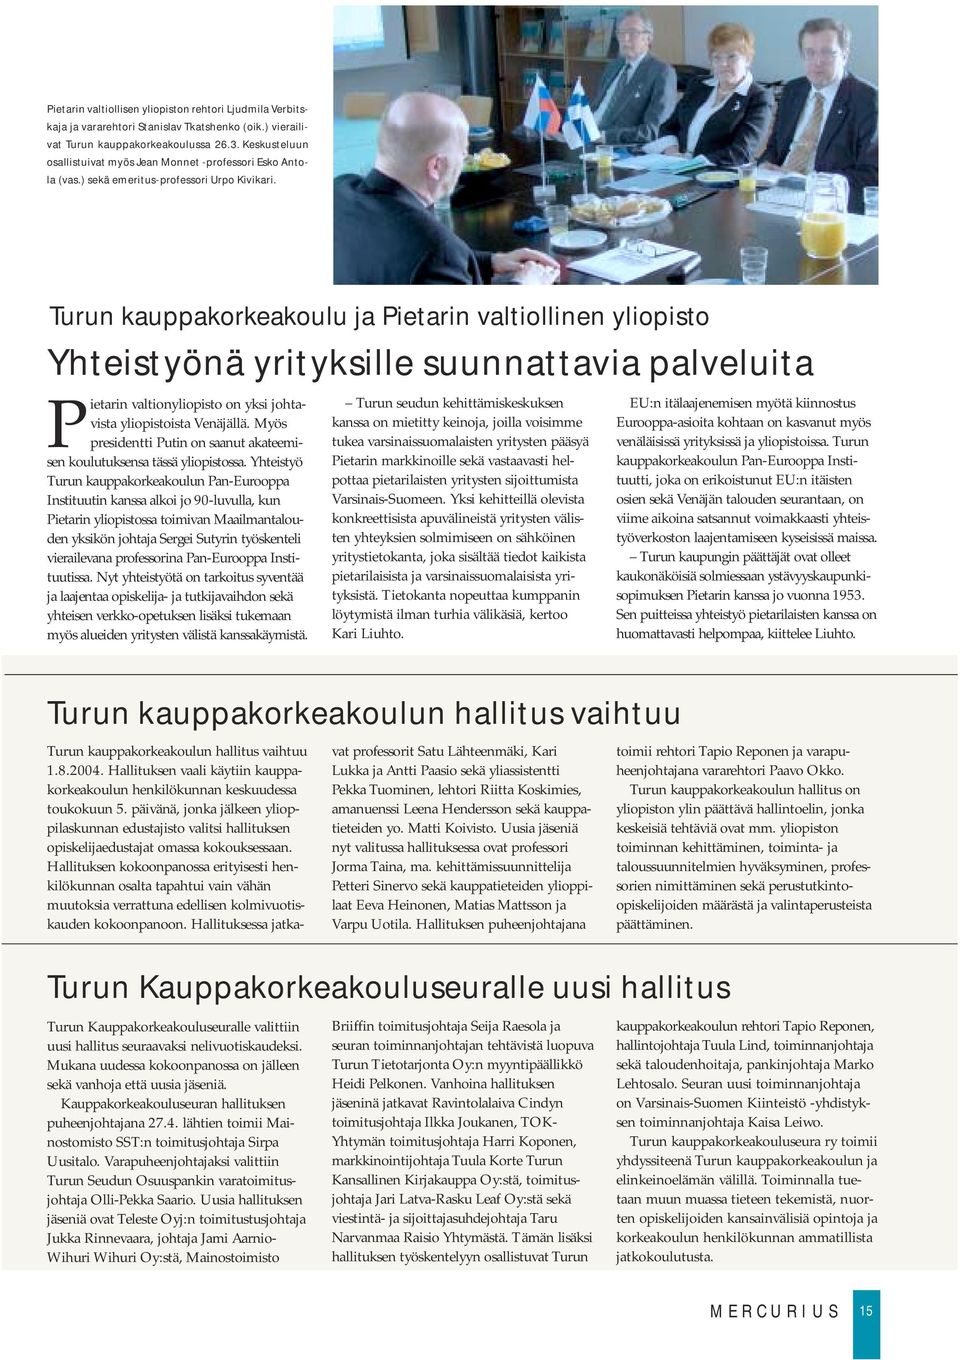 Turun kauppakorkeakoulu ja Pietarin valtiollinen yliopisto Yhteistyönä yrityksille suunnattavia palveluita Pietarin valtionyliopisto on yksi johtavista yliopistoista Venäjällä.